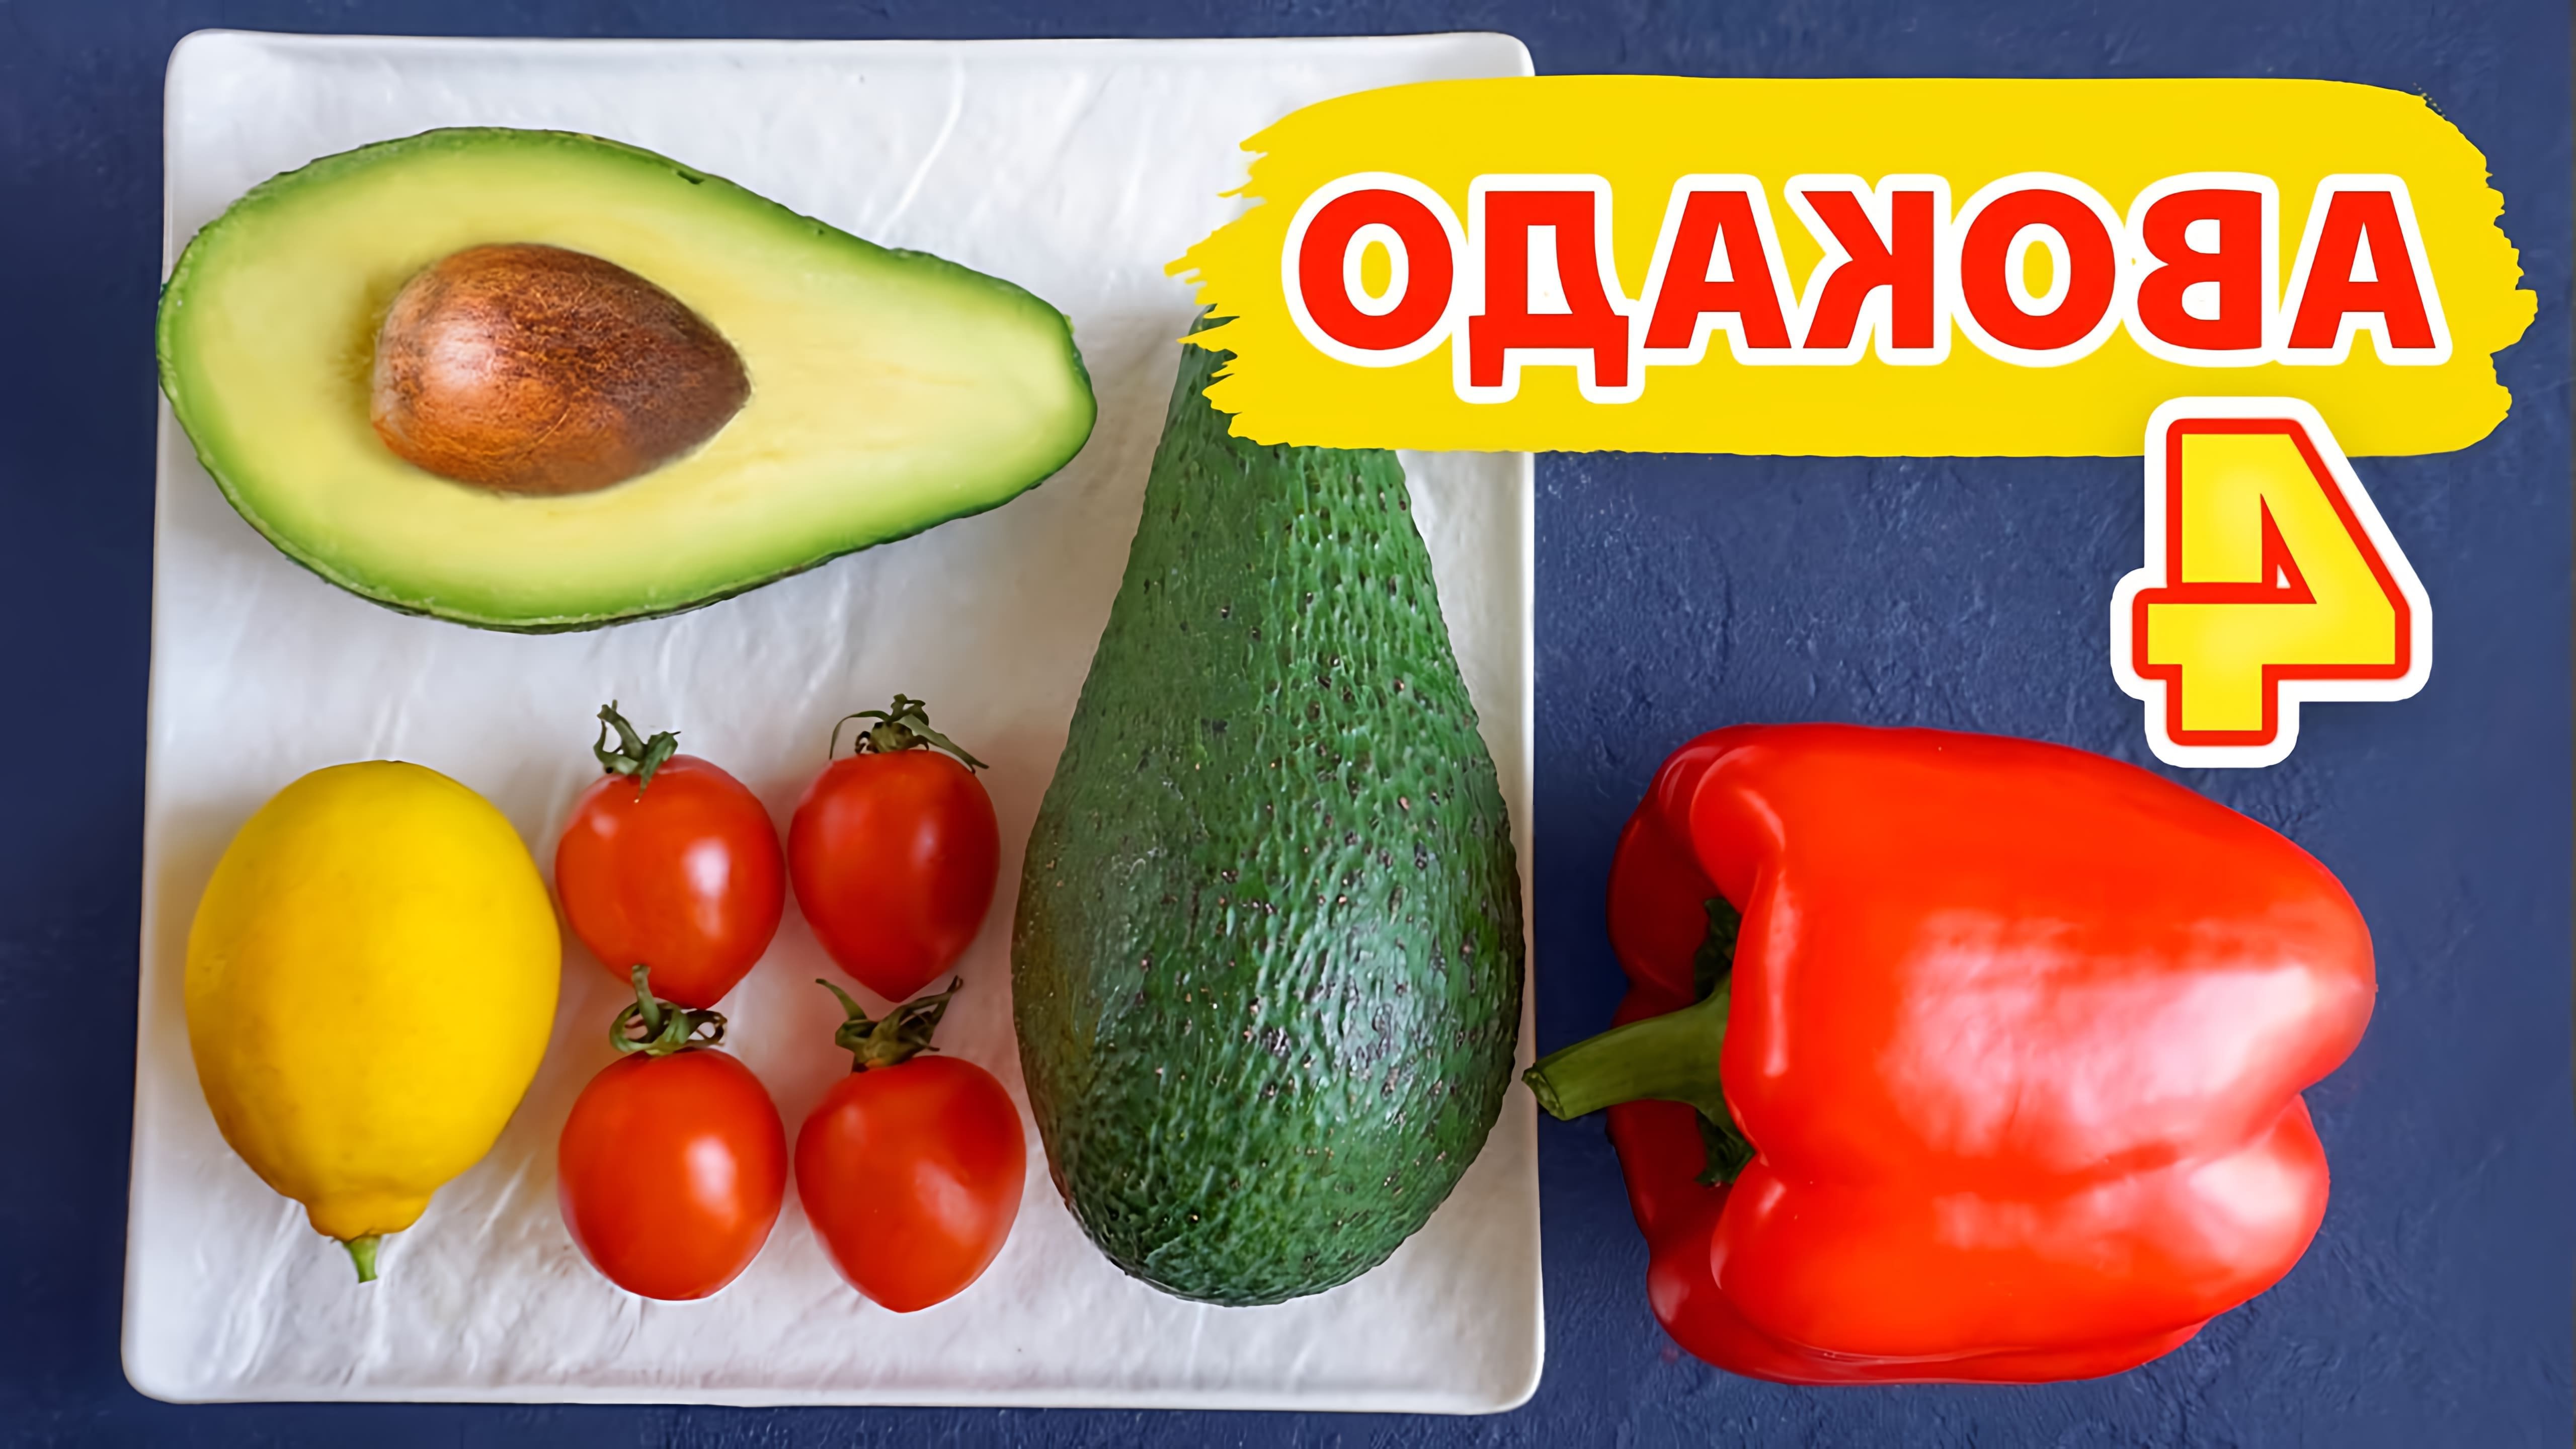 В этом видео Виктория Субботина предлагает 4 рецепта с авокадо: классический гуакамоле, салат с авокадо, рыбой и томатами, а также быстрый бутерброд с авокадо